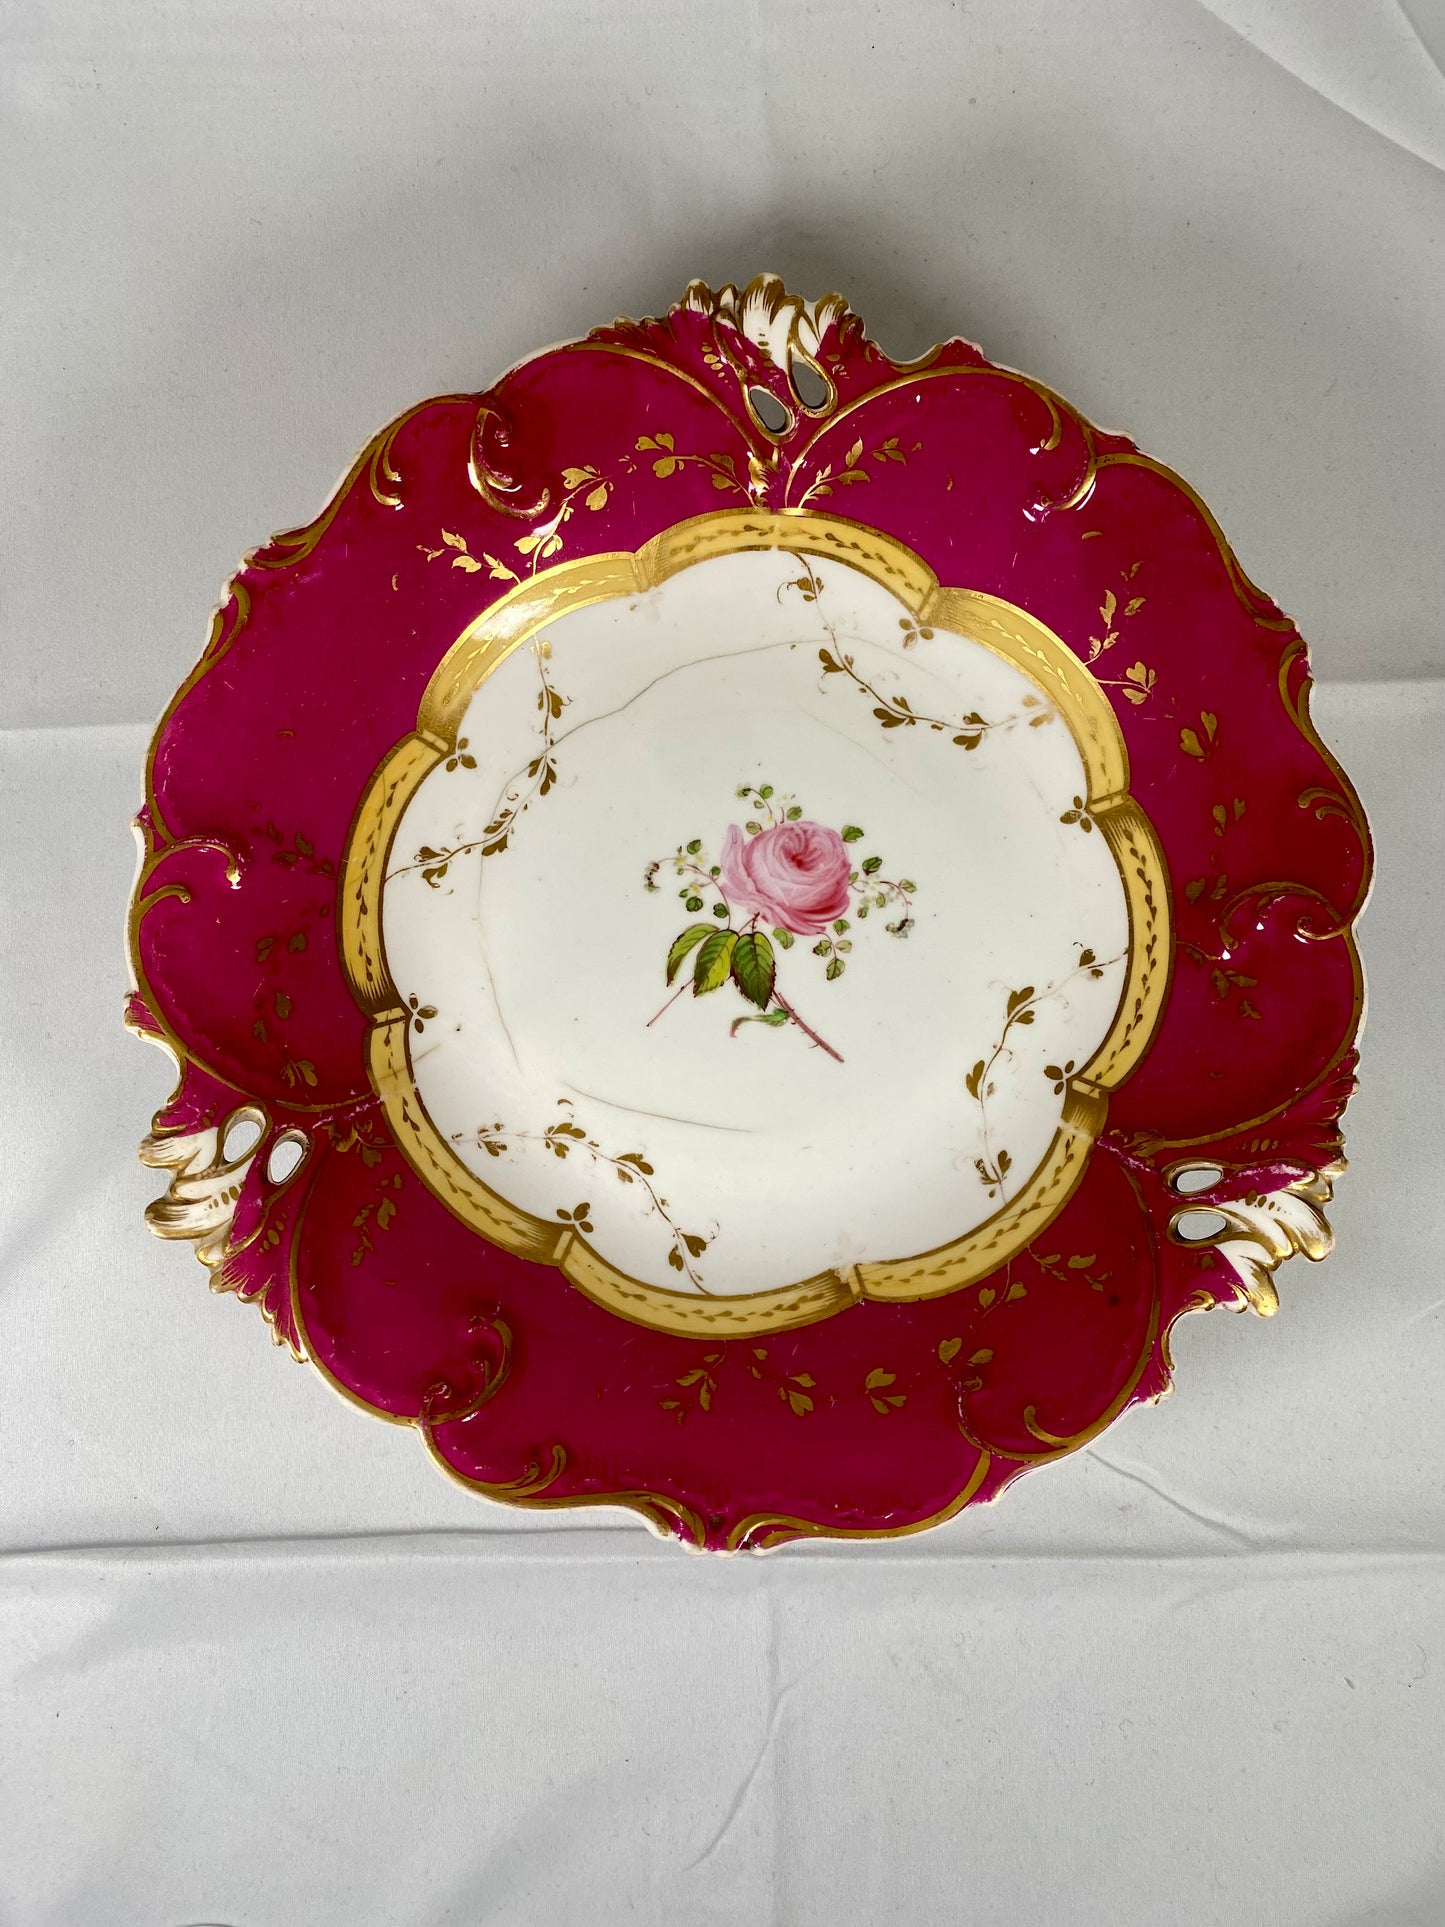 18th Century European Porcelain Comport, Hand Painted, Gilt Rim